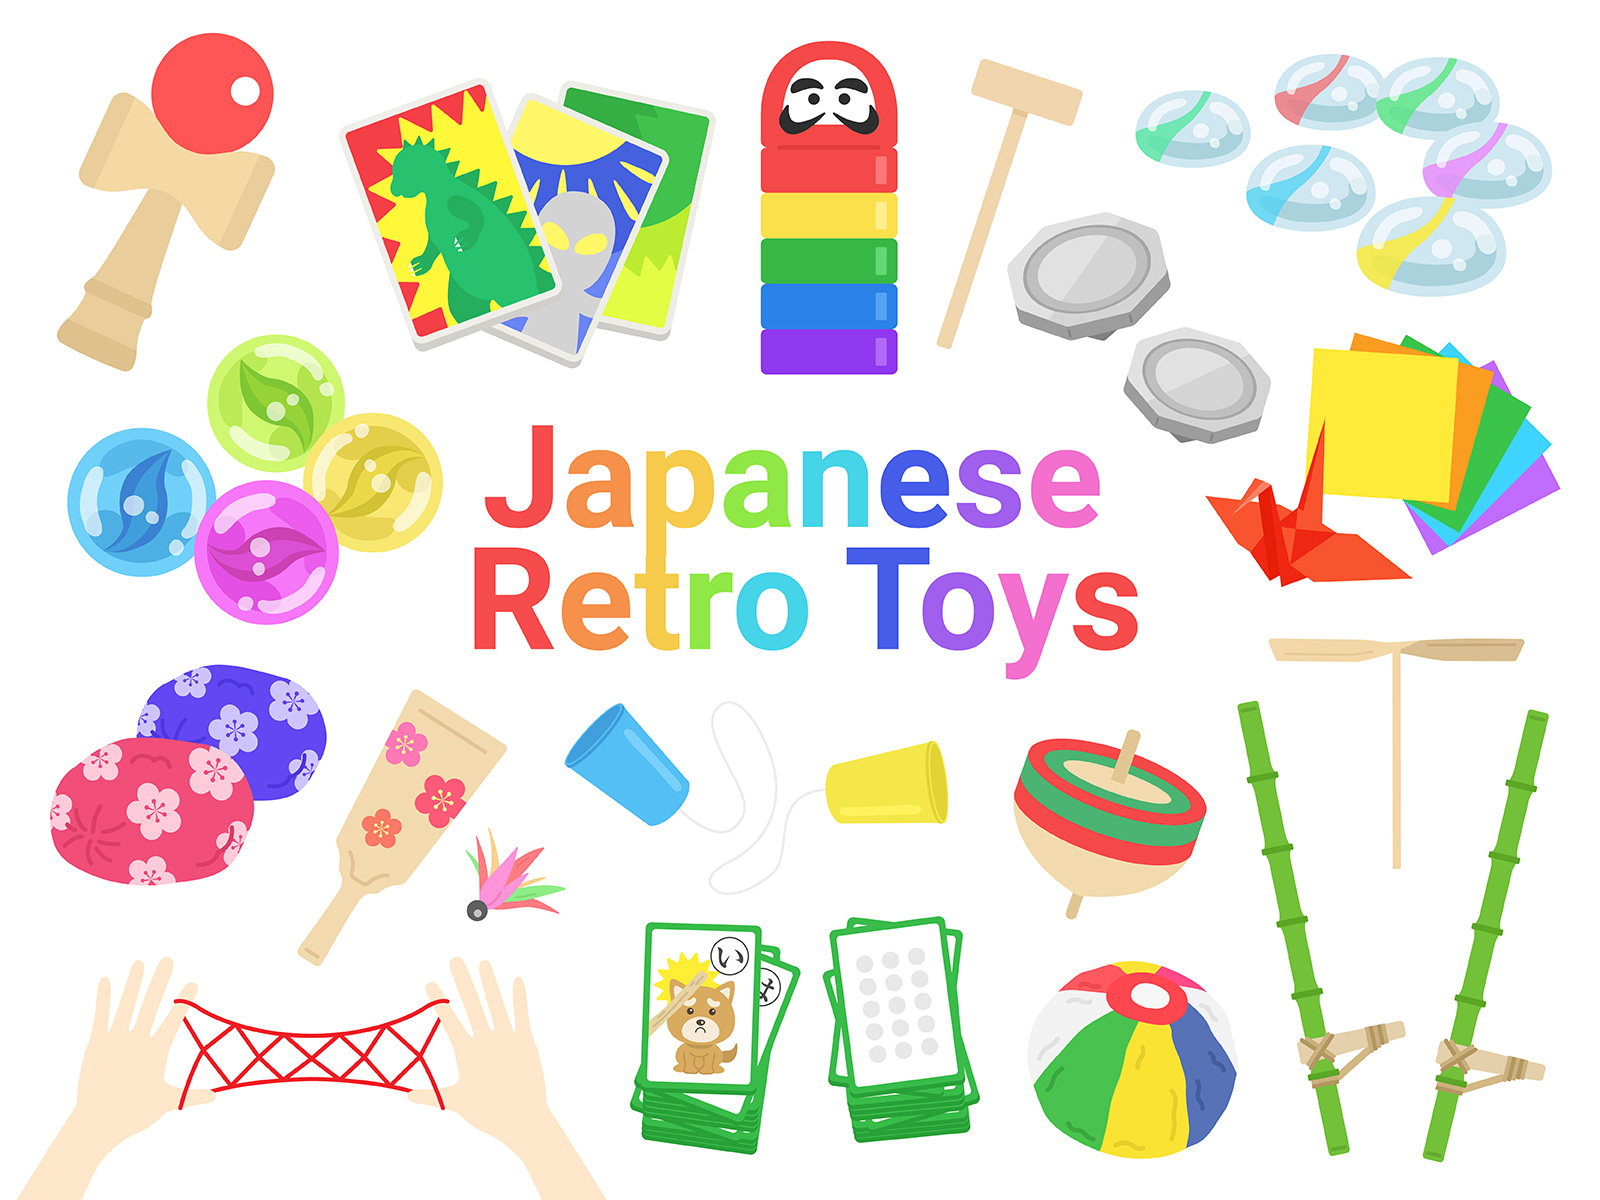 日本の伝統の遊び 玩具 の種類の無料イラスト 商用利用可能 フリー素材 22 01 26更新 イラストセンター